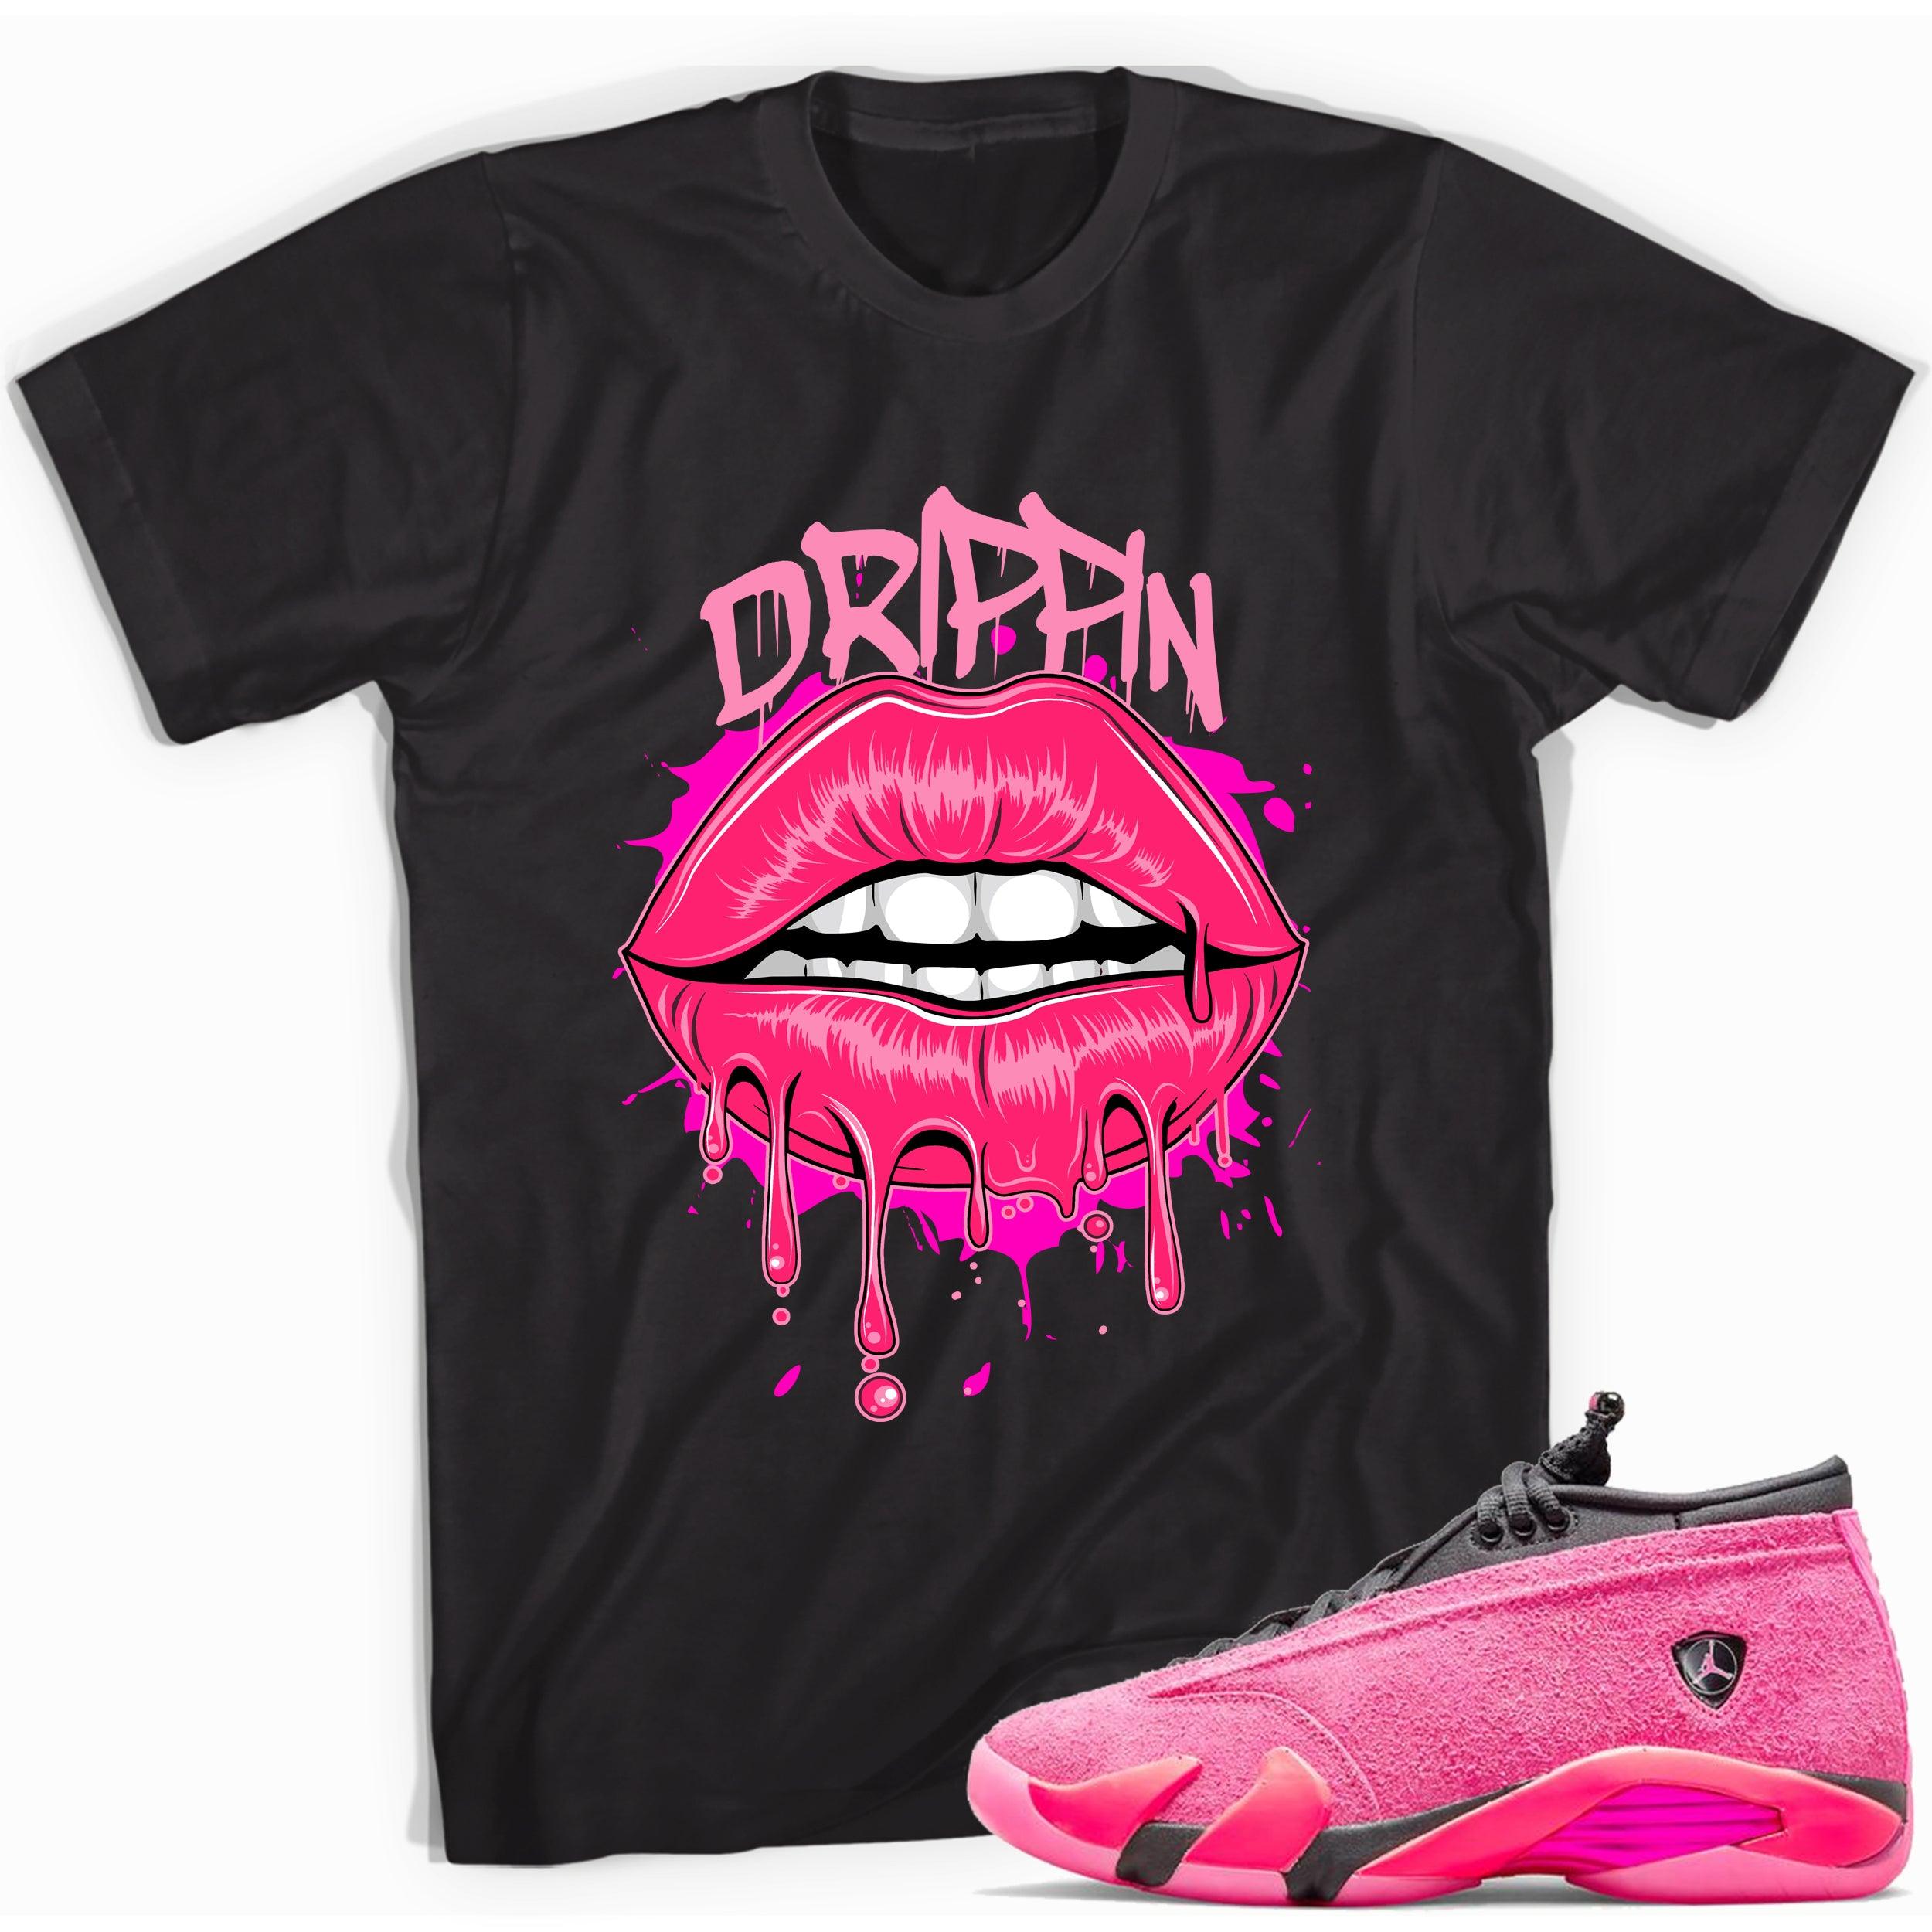 Black Drippin Shirt Jordan 14s Low Shocking Pink photo